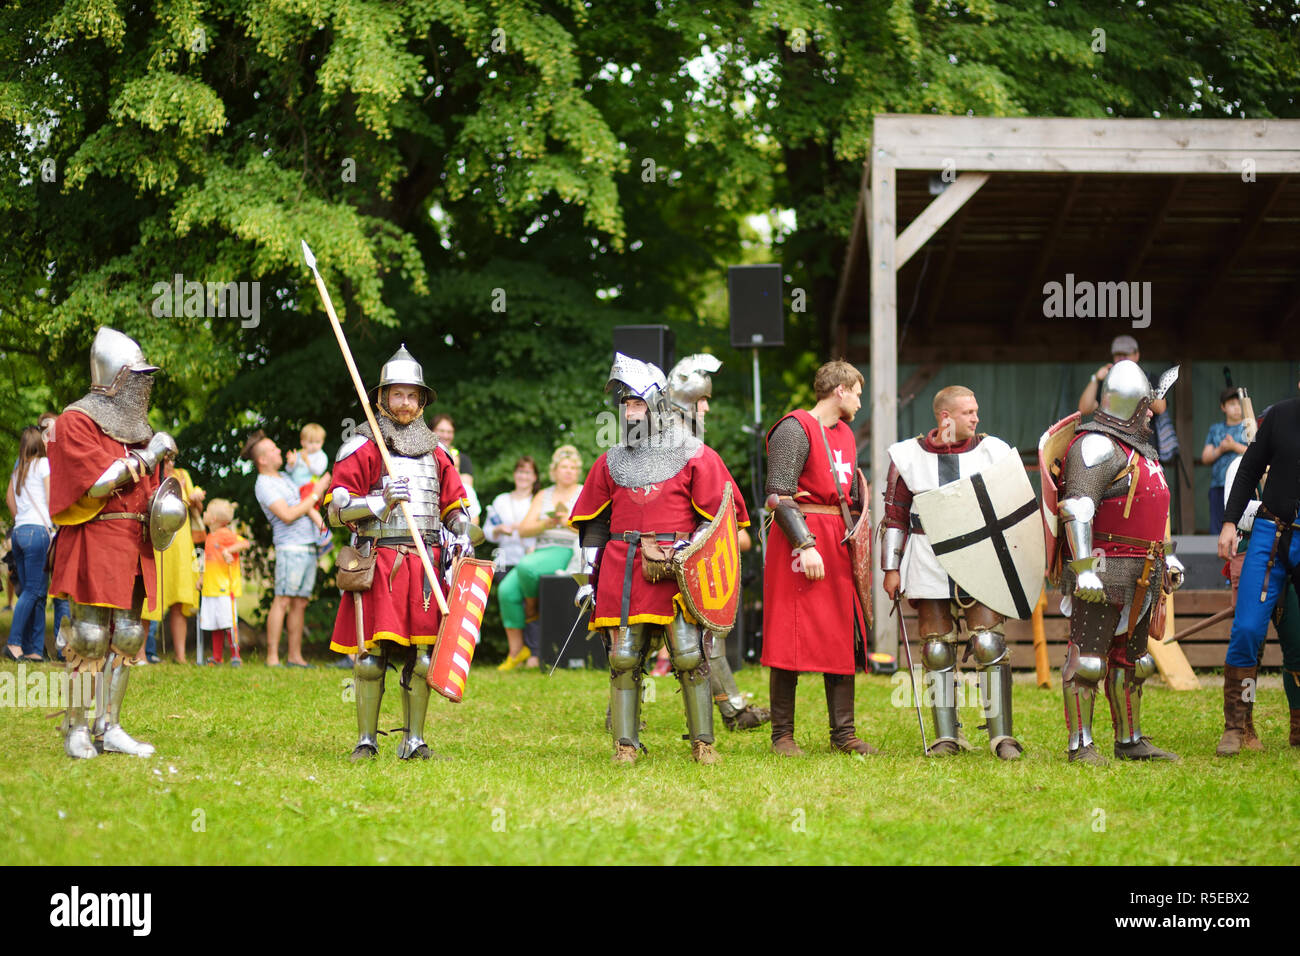 TRAKAI, Litauen - 16. JUNI 2018: Menschen tragen Ritter Kostüme während historische Reenactment auf jährliche Mittelalter Festival, in Trakai Halbinsel gehalten Stockfoto